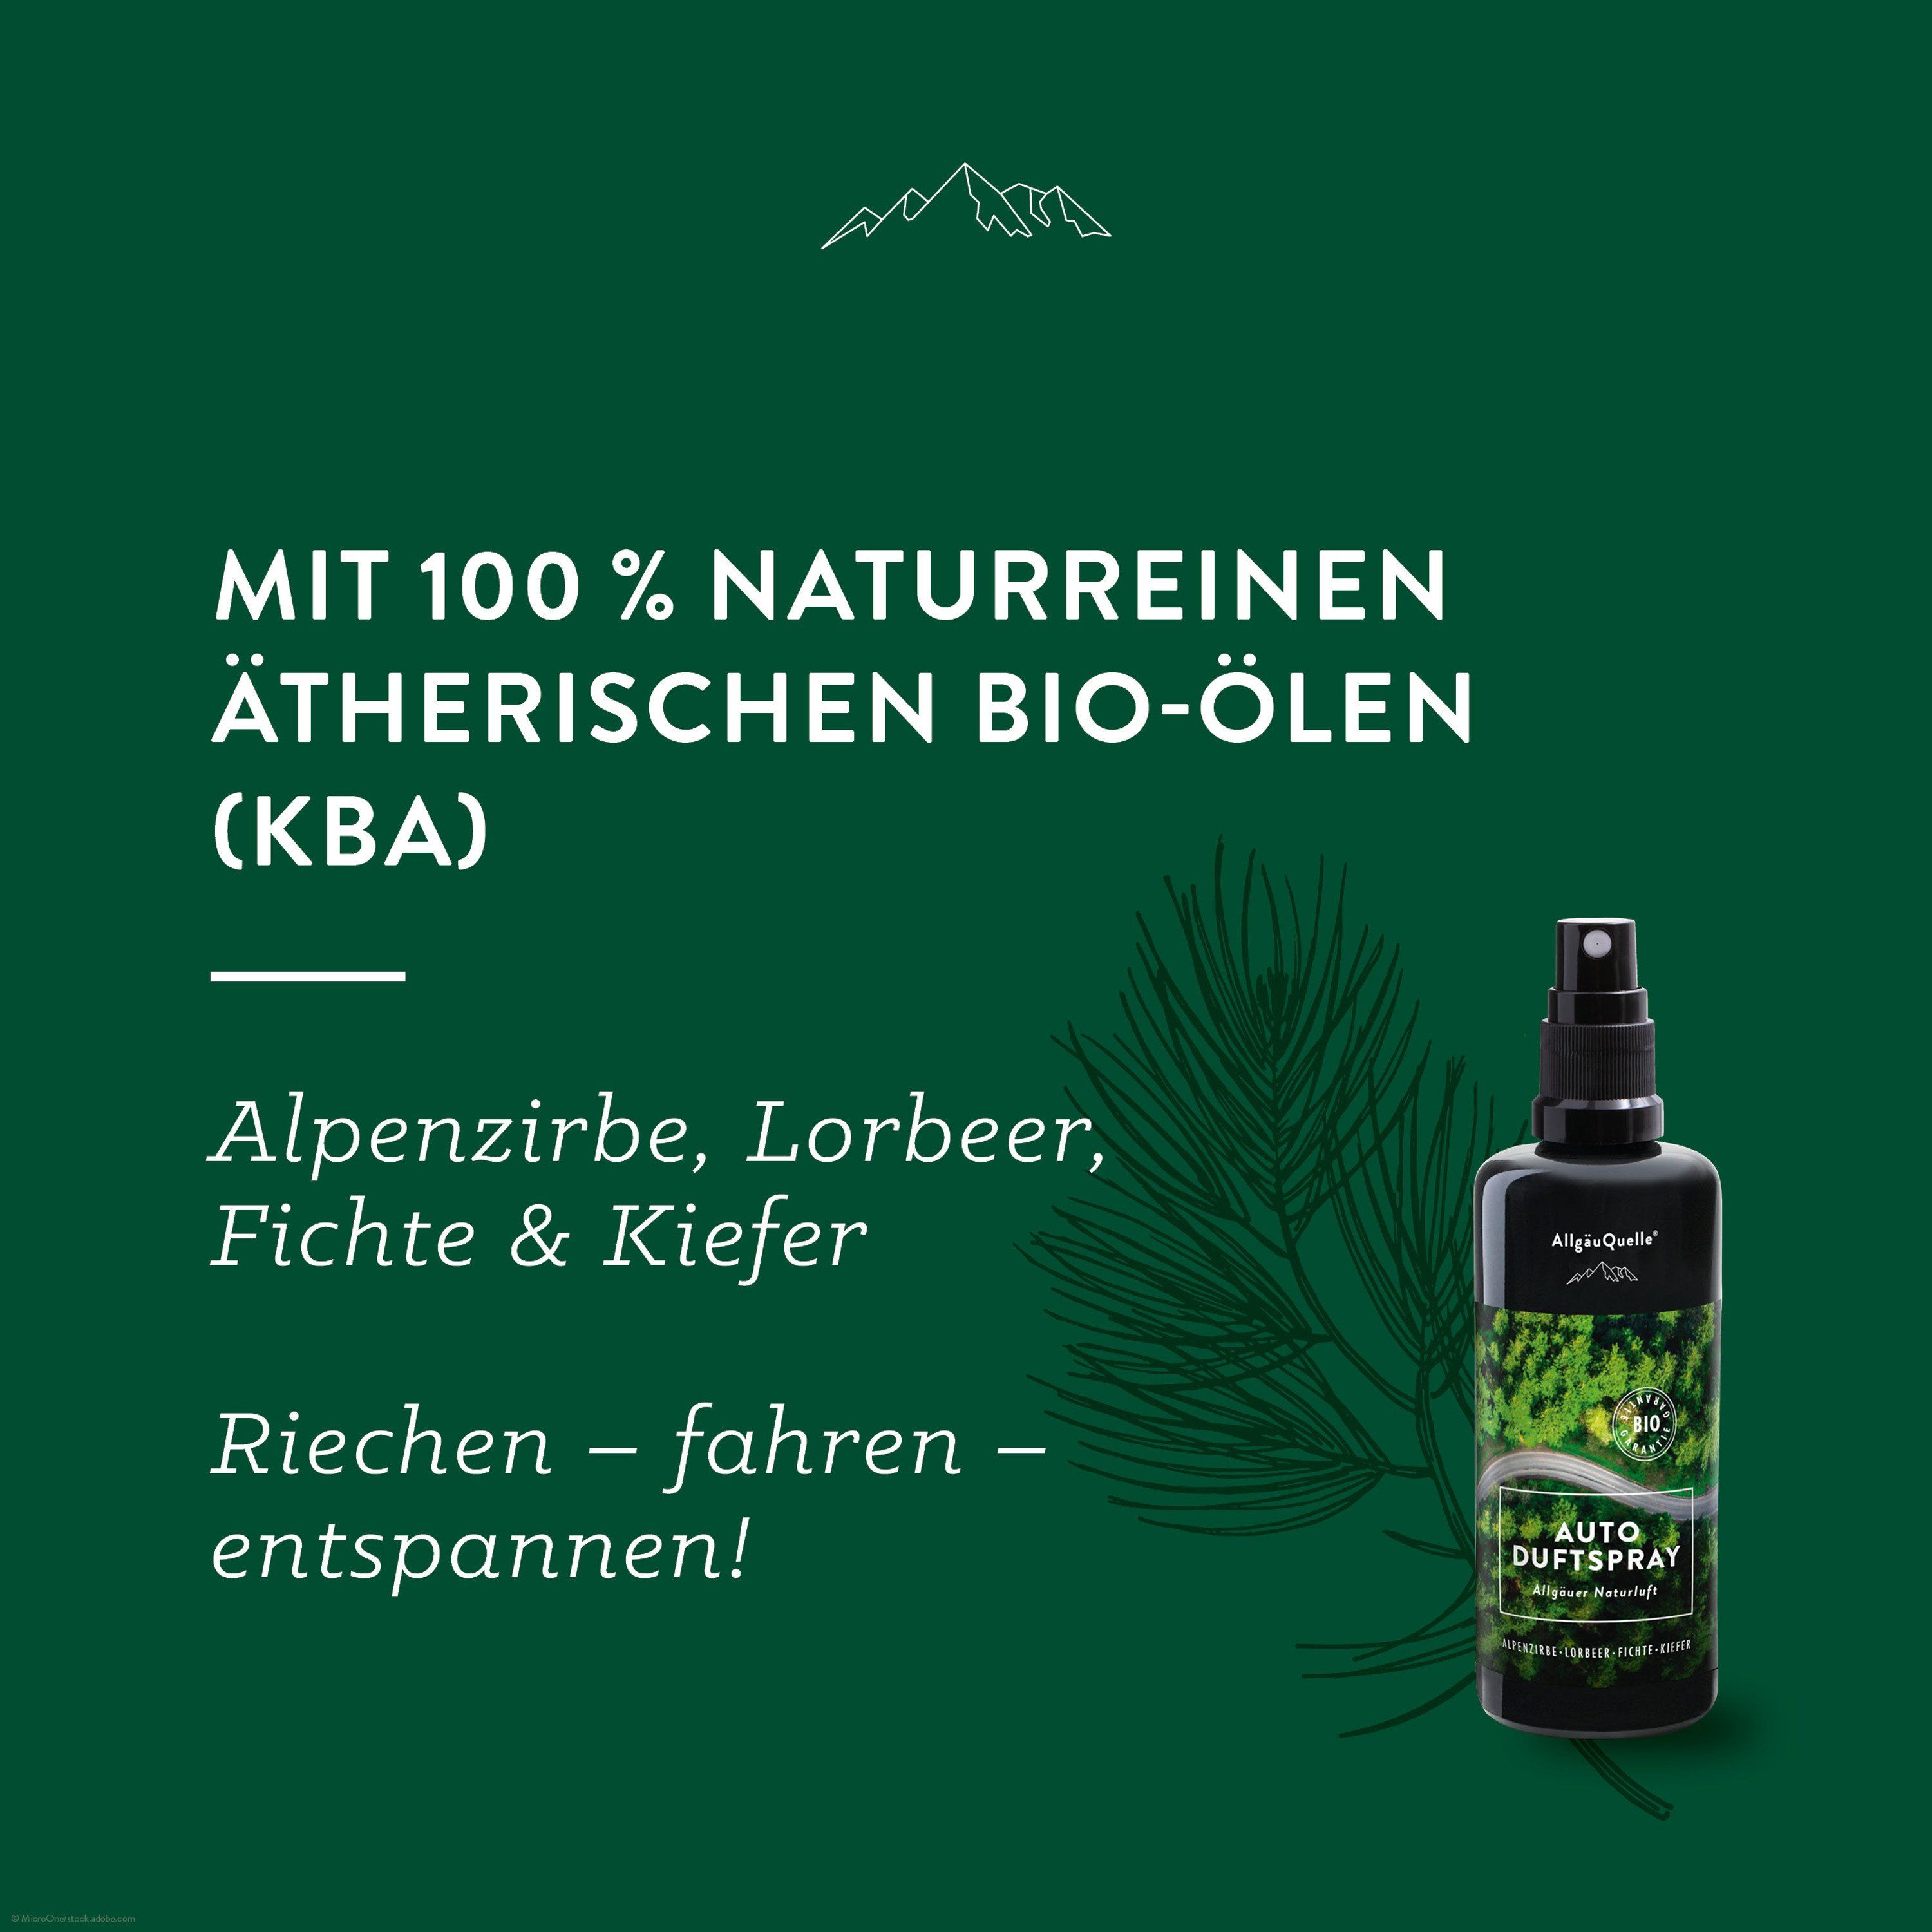 AllgäuQuelle Bio Autoduft Lufterfrischer Duftspray Alpenzirbe, Lorbeer, Fichte und Kiefer